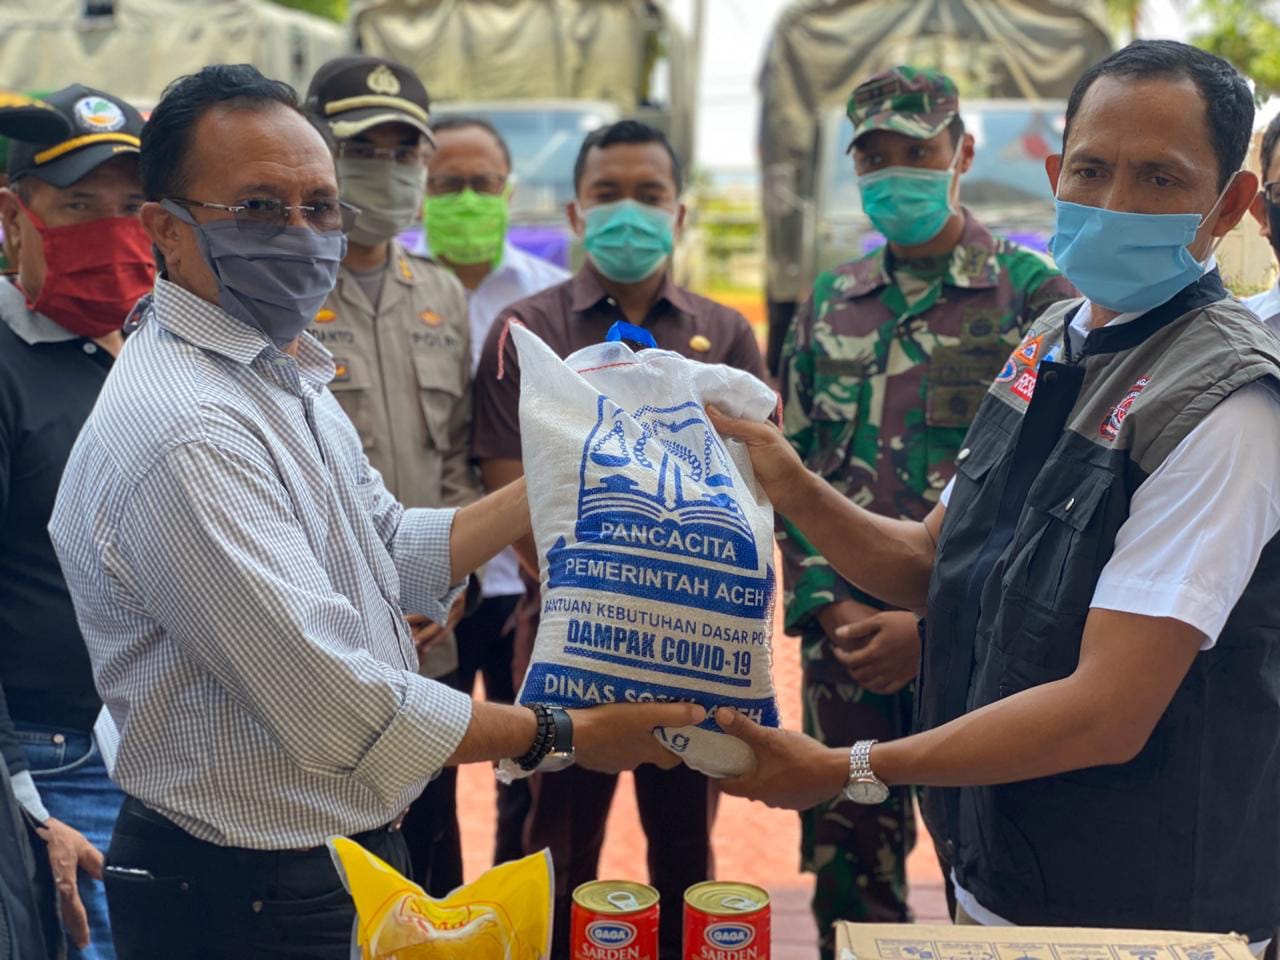 Pemerintah Aceh Selatan Terima 5.933 Paket Sembako untuk Masyarakat Miskin yang Terdampak Covid-19